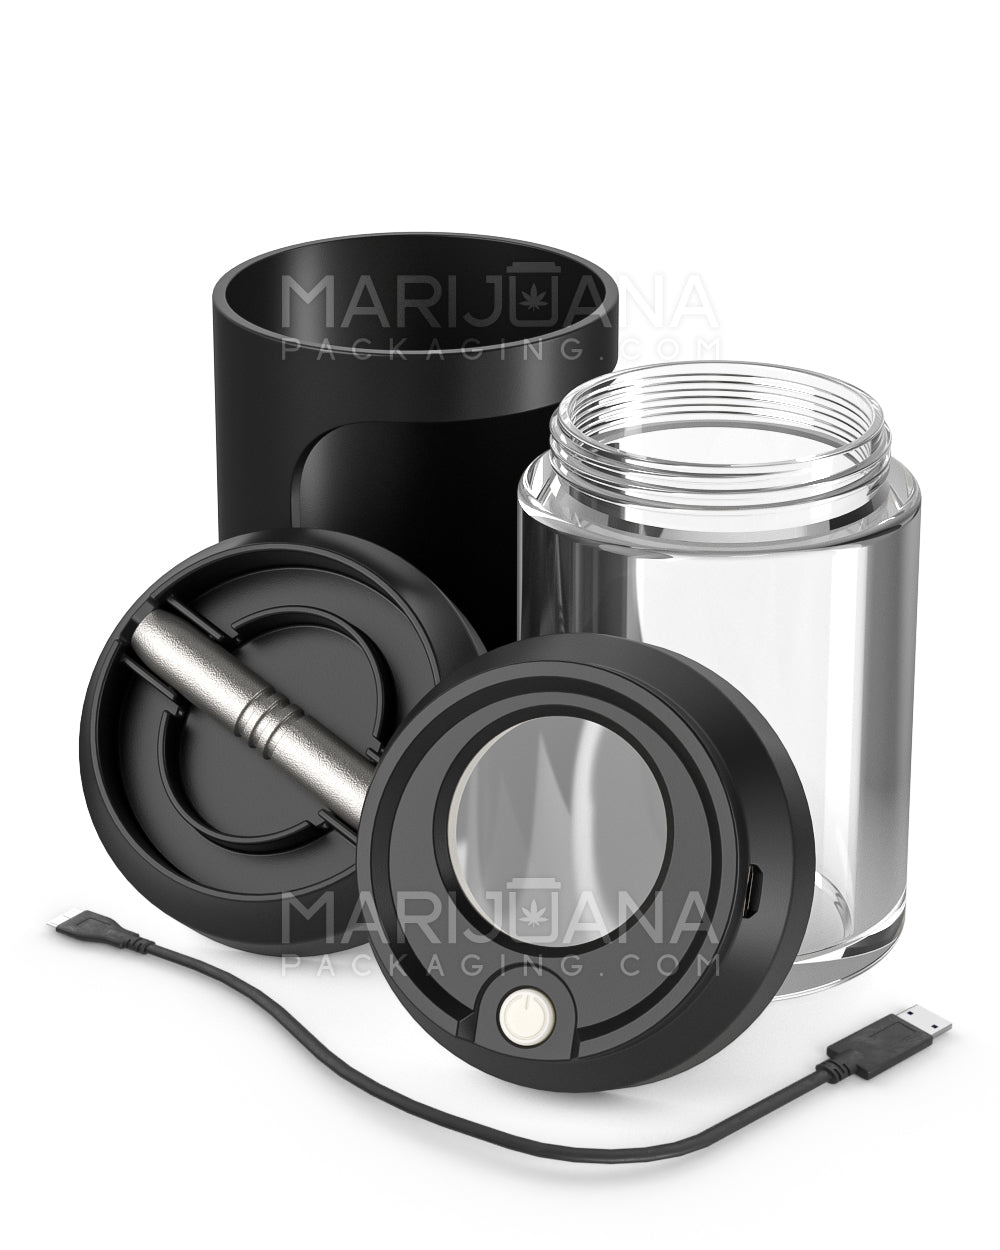 Light Up Magnifying Cap Stash Jar w/ Magnetic Grinder & One-Hitter | Plastic - 6g - Black - 2